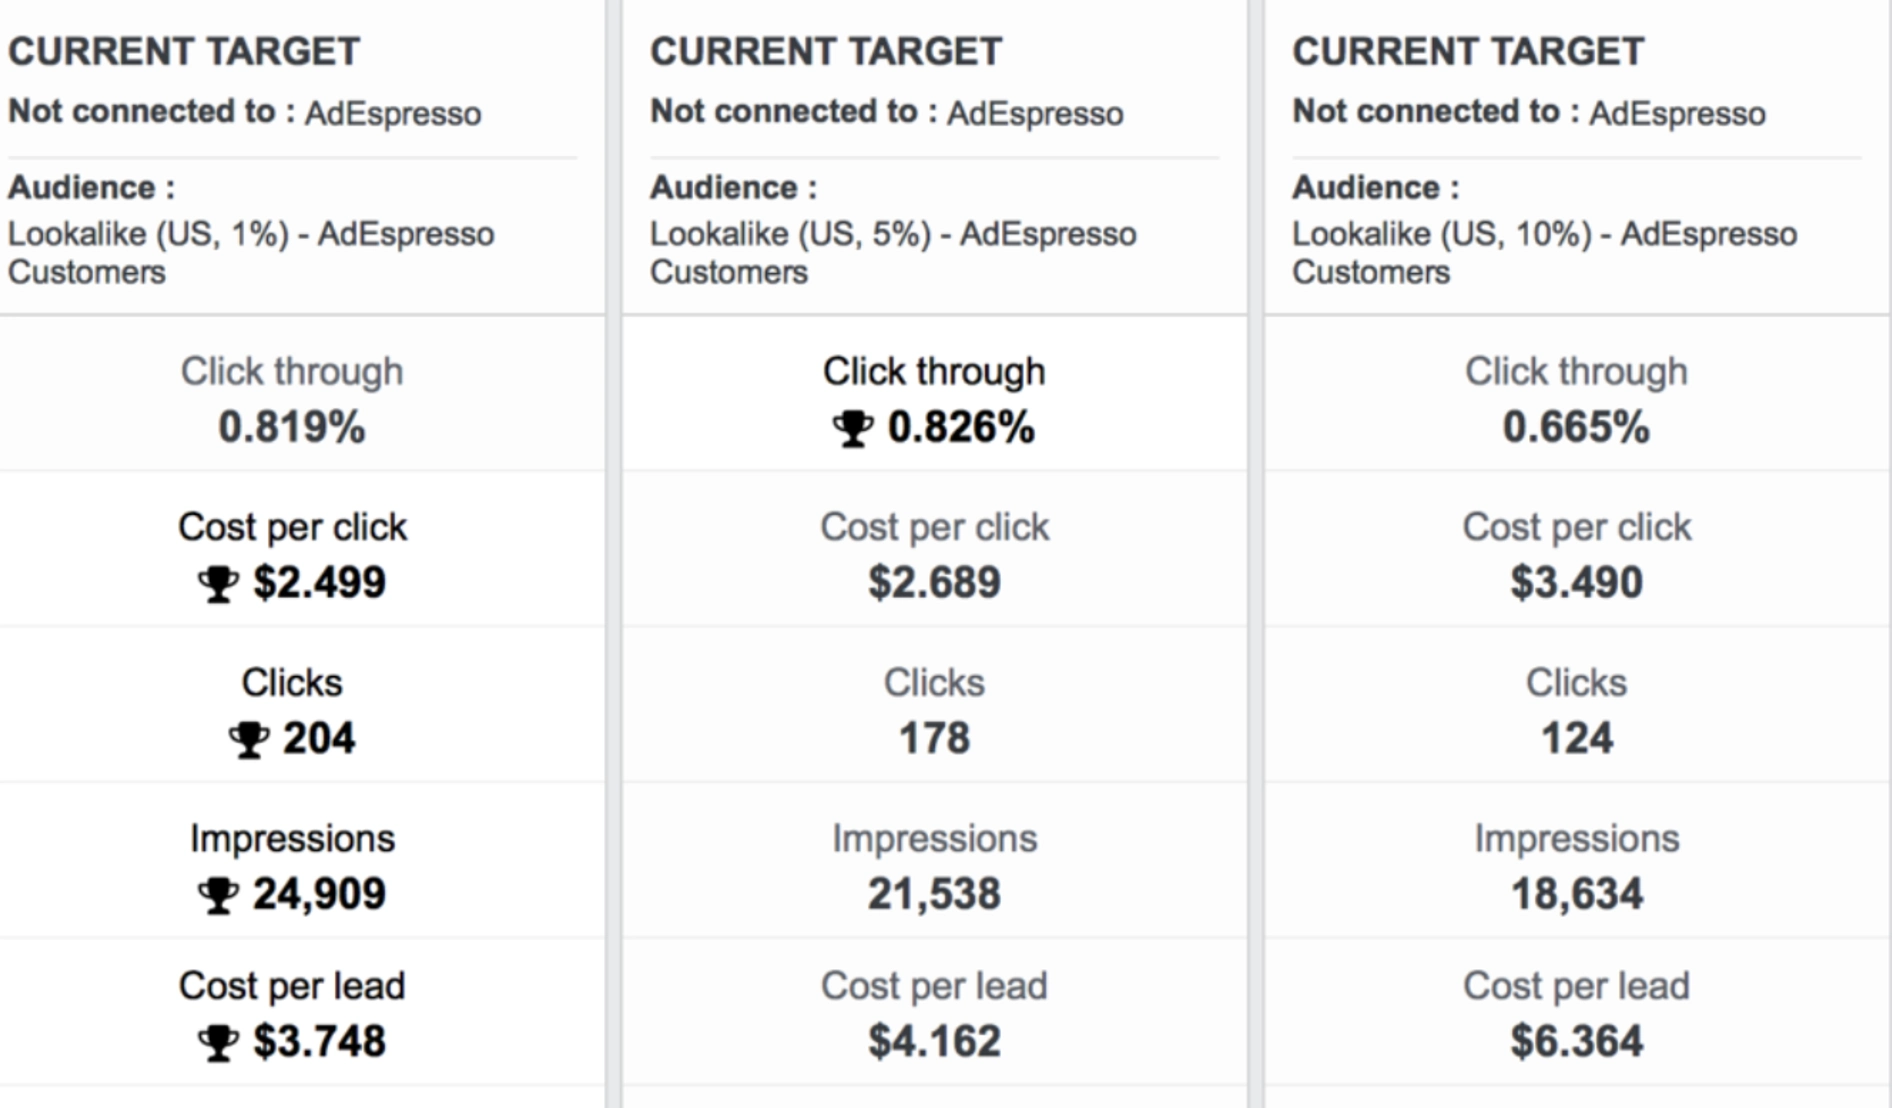 compare lookalike audiences based on percentages